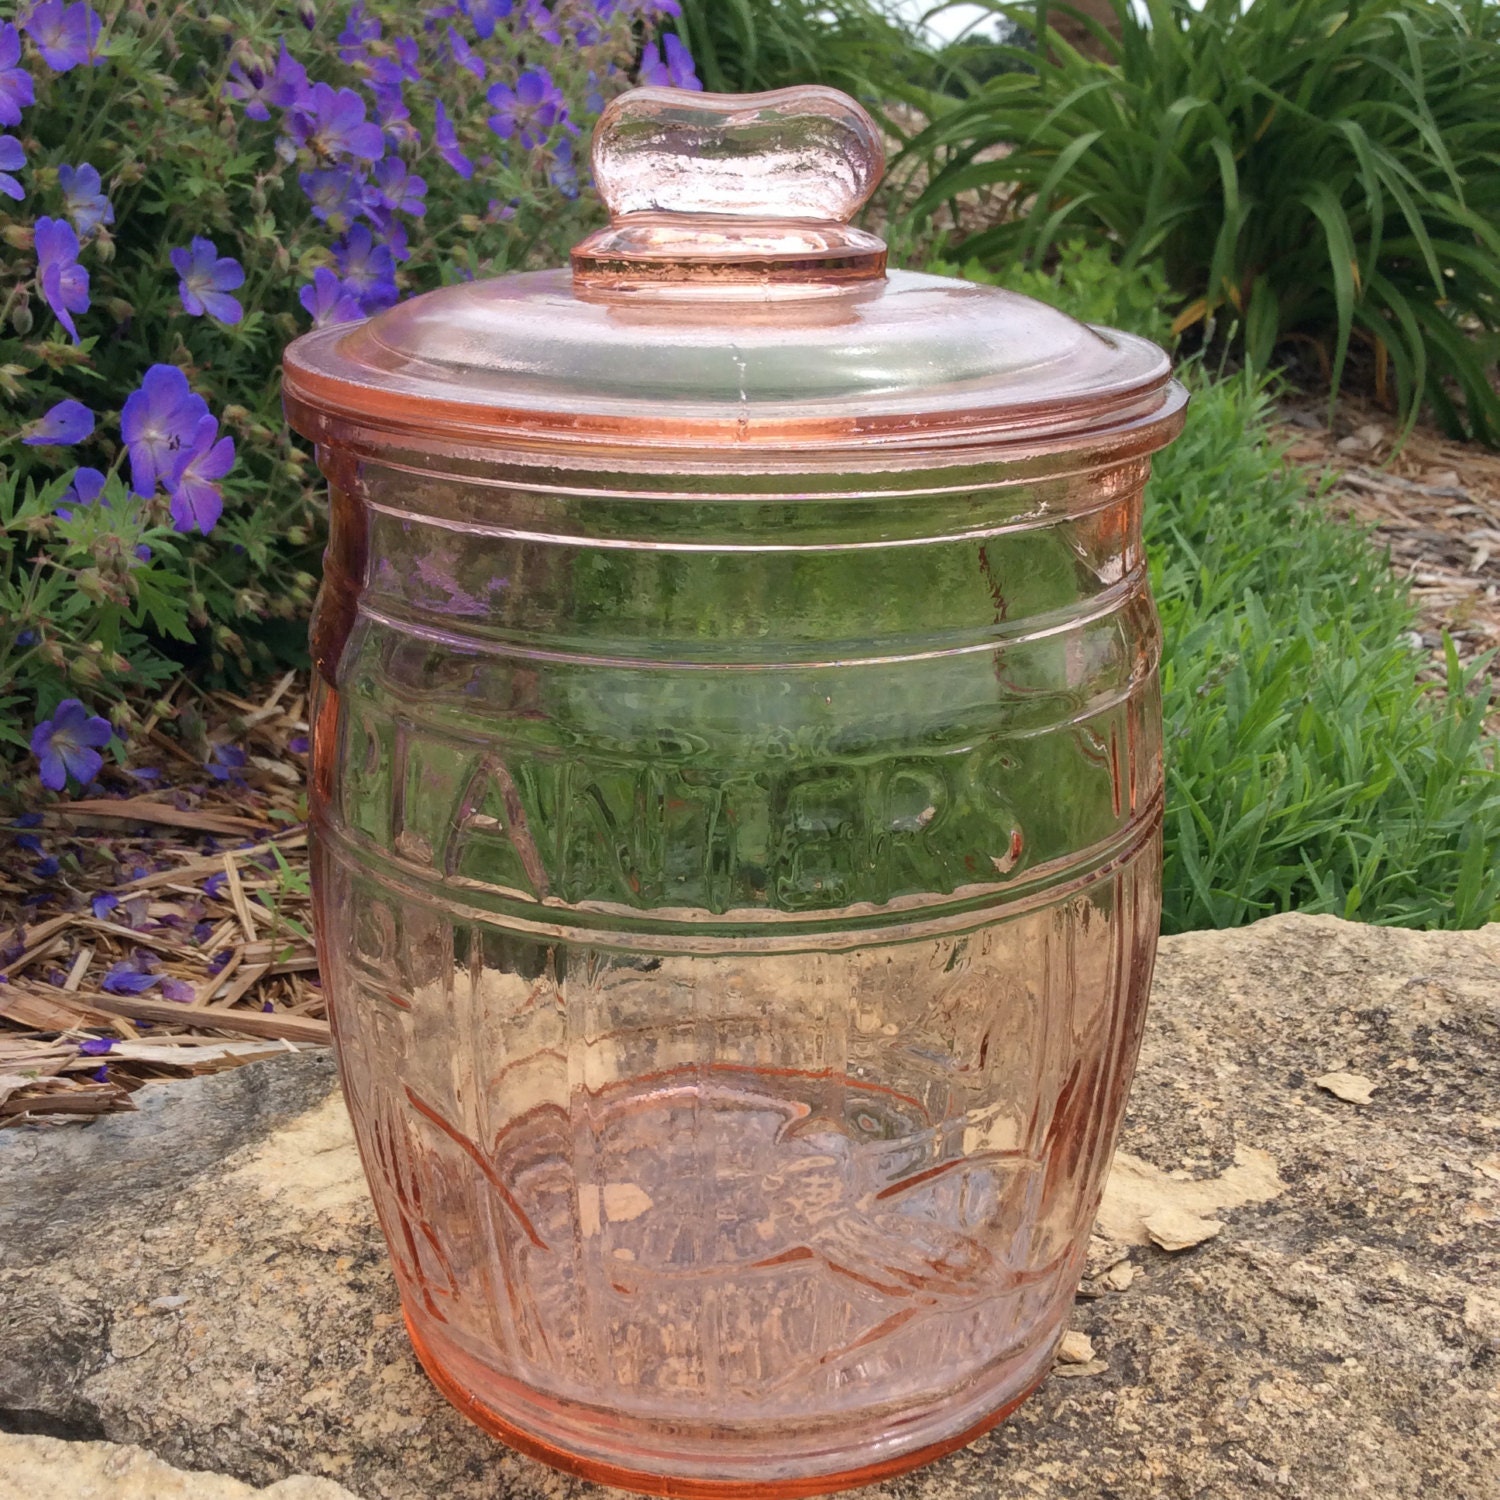 Sale on Vintage Pink Planters Peanut Cookie Jar with